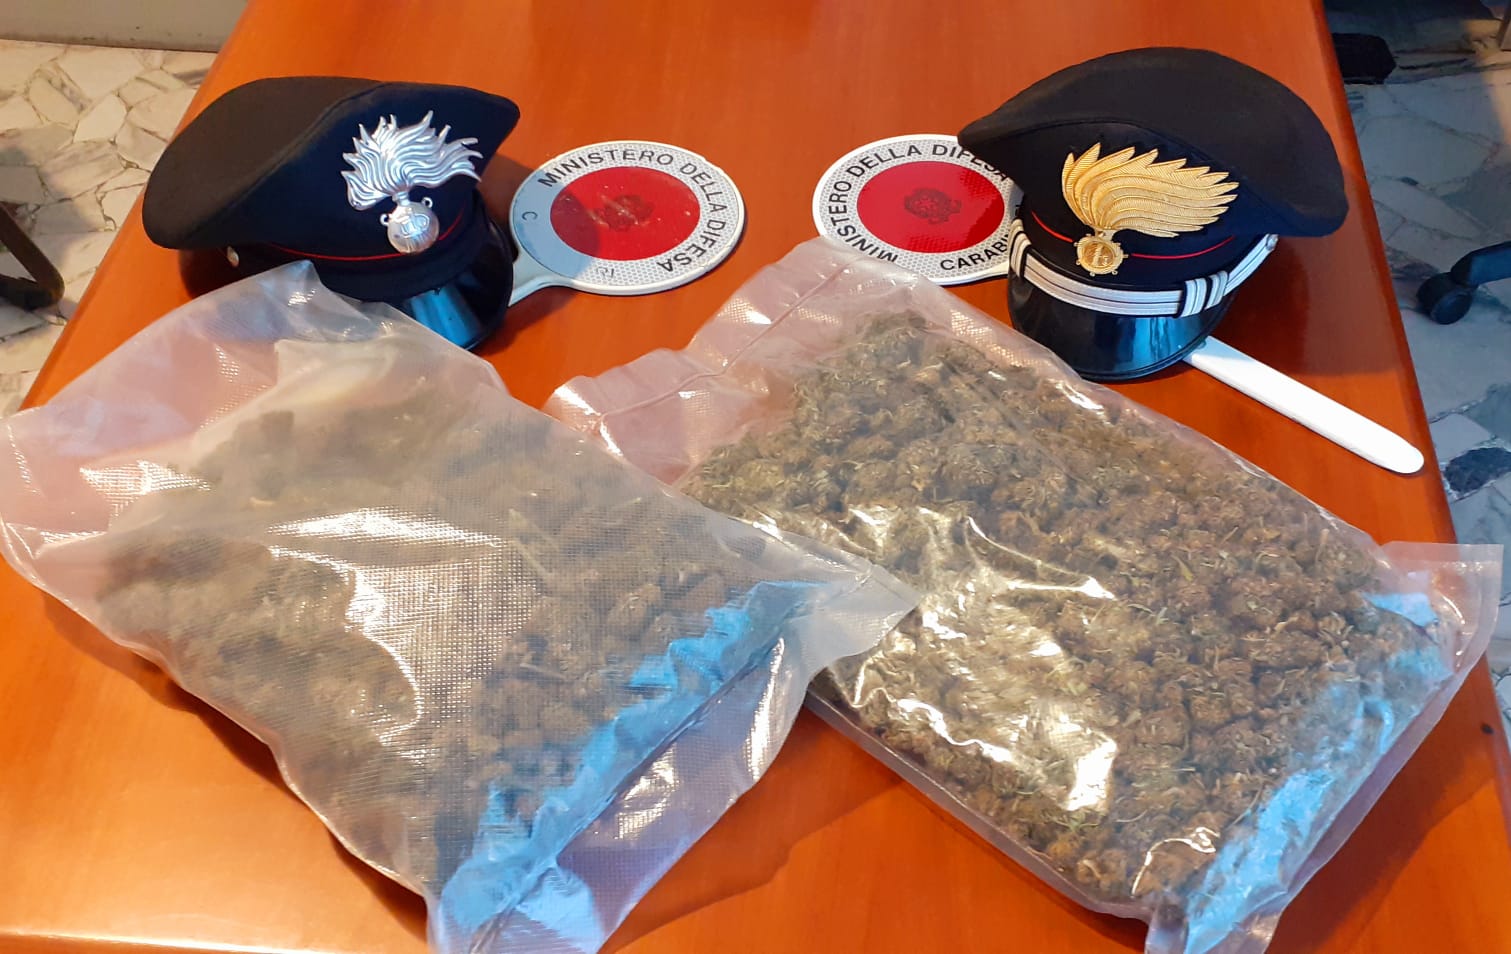 Trovato un chilo di marijuana in un sottoscala nel Tortonese: tre persone denunciate